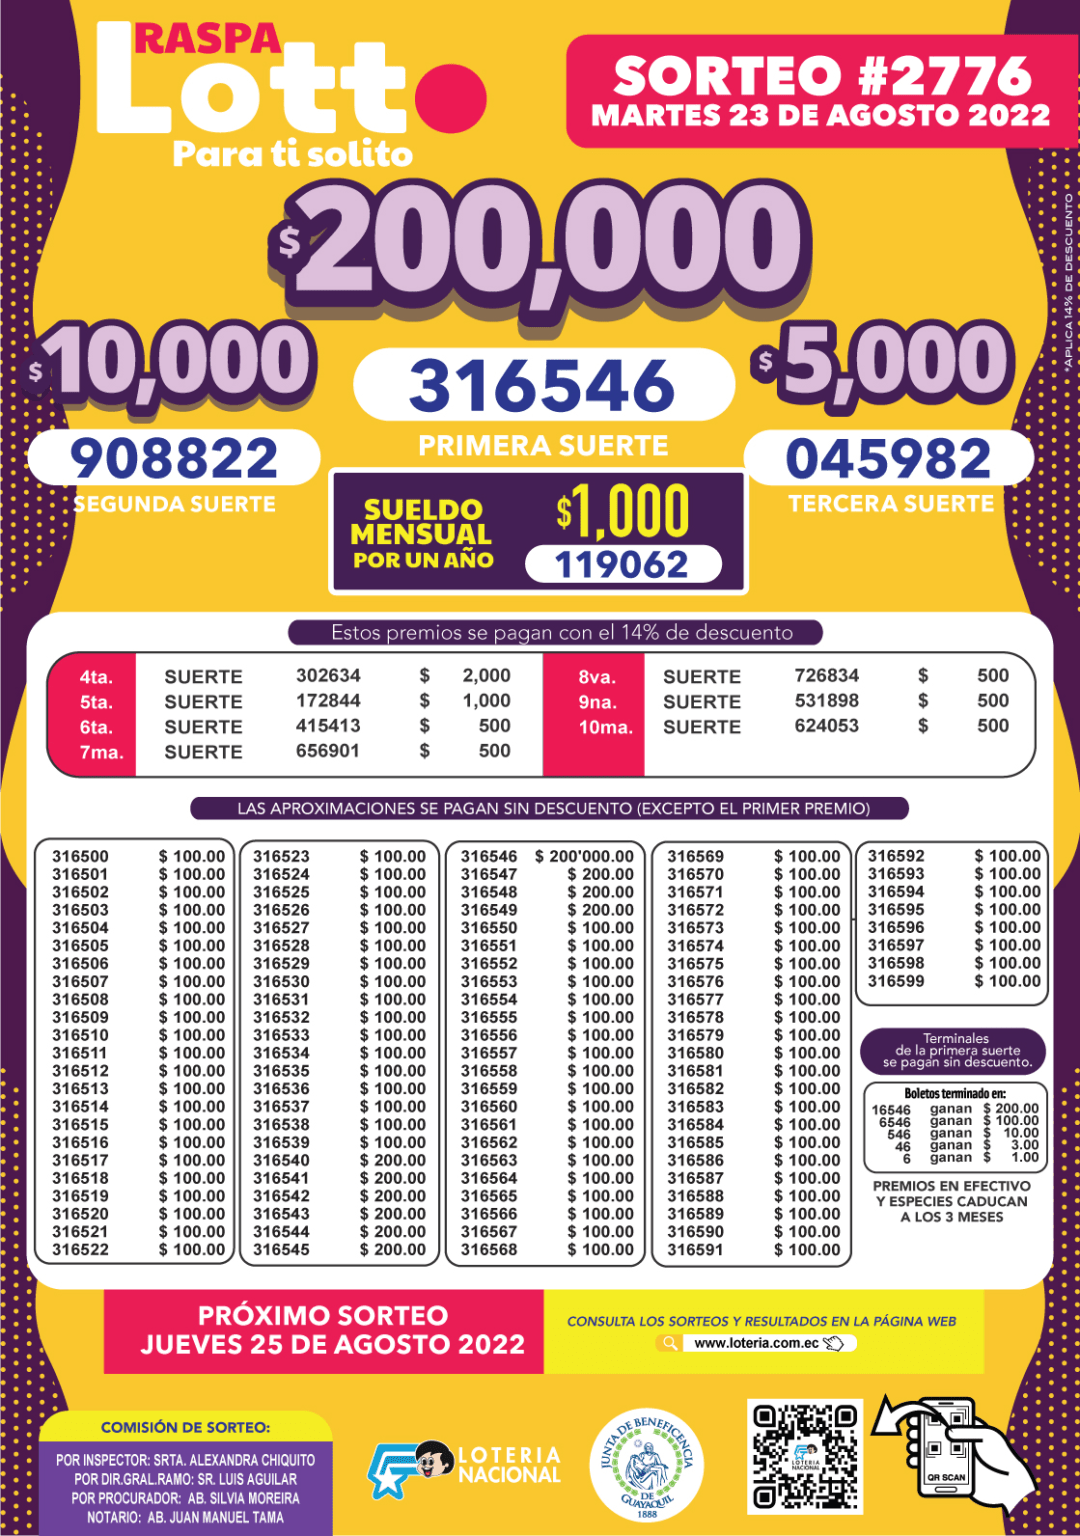 Resultados del Lotto sorteo 2777 Números ganadores de la lotería de